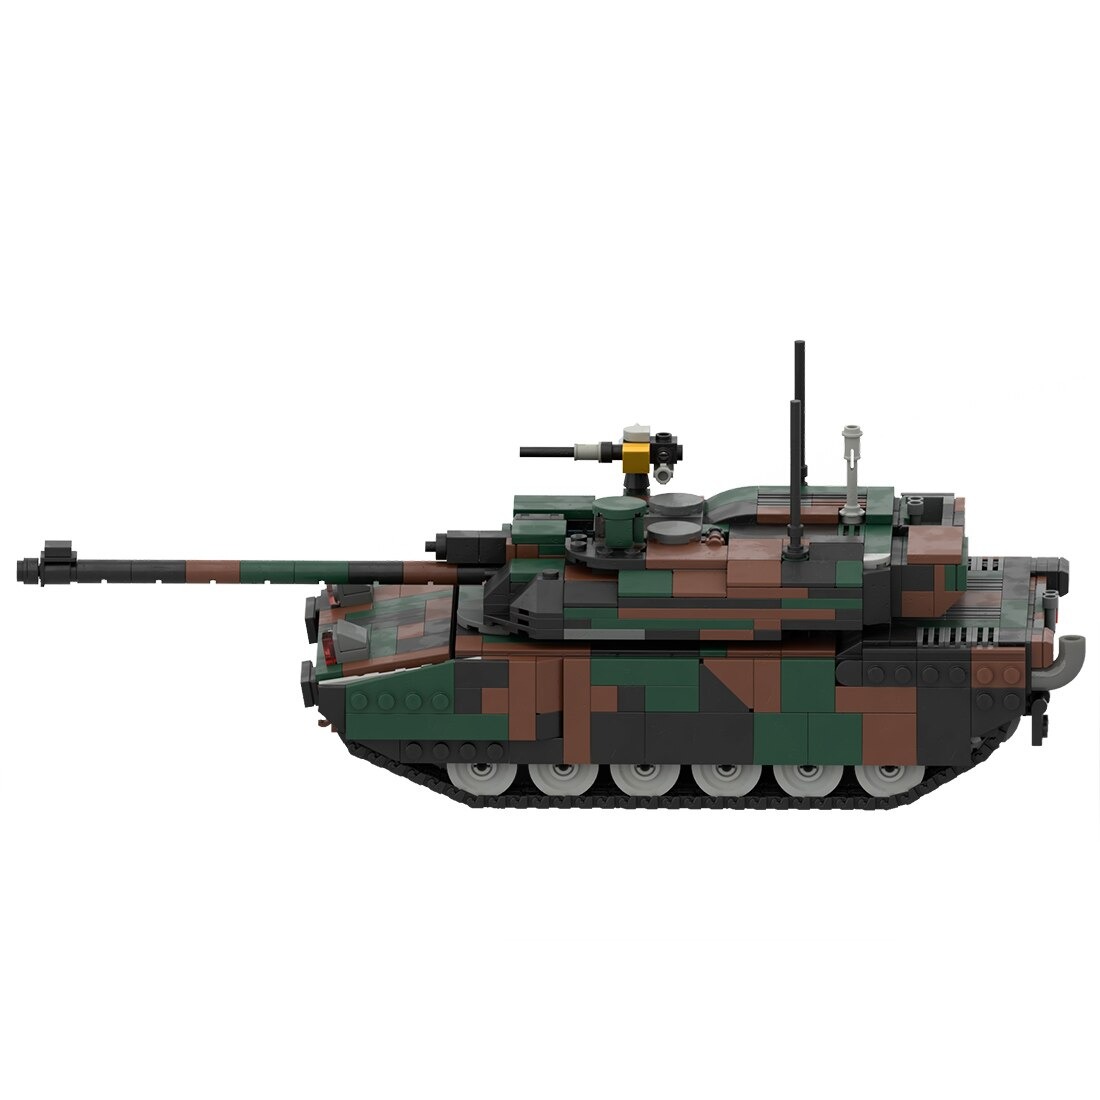 Moc 34858 Leclerc Main Battle Tank Model Main 3.jpg